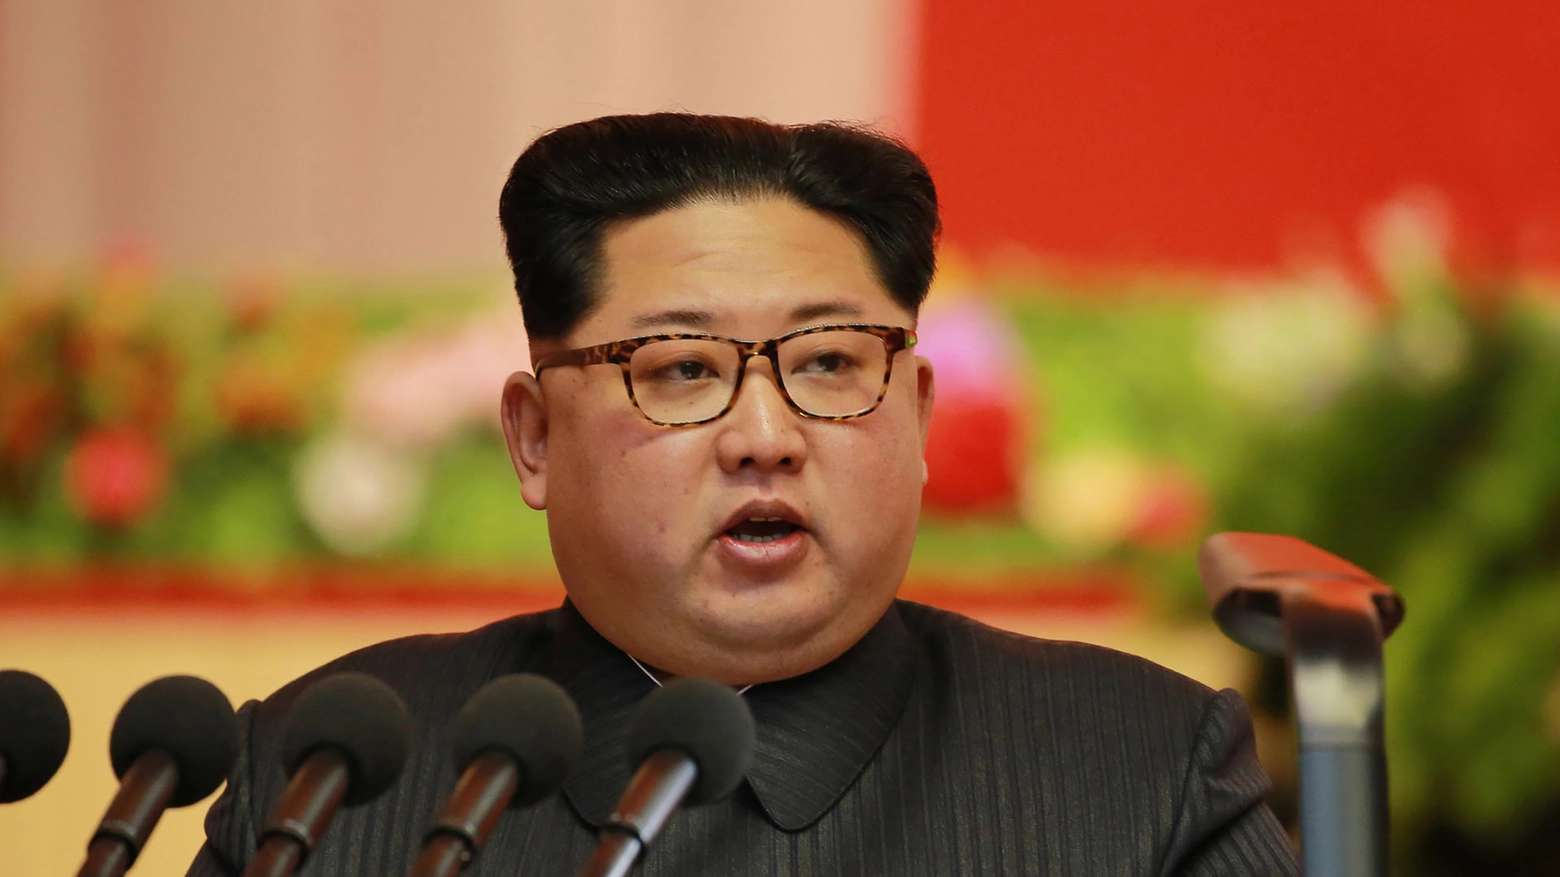 Il dittatore nordcoreano Kim jong-un (Afp)